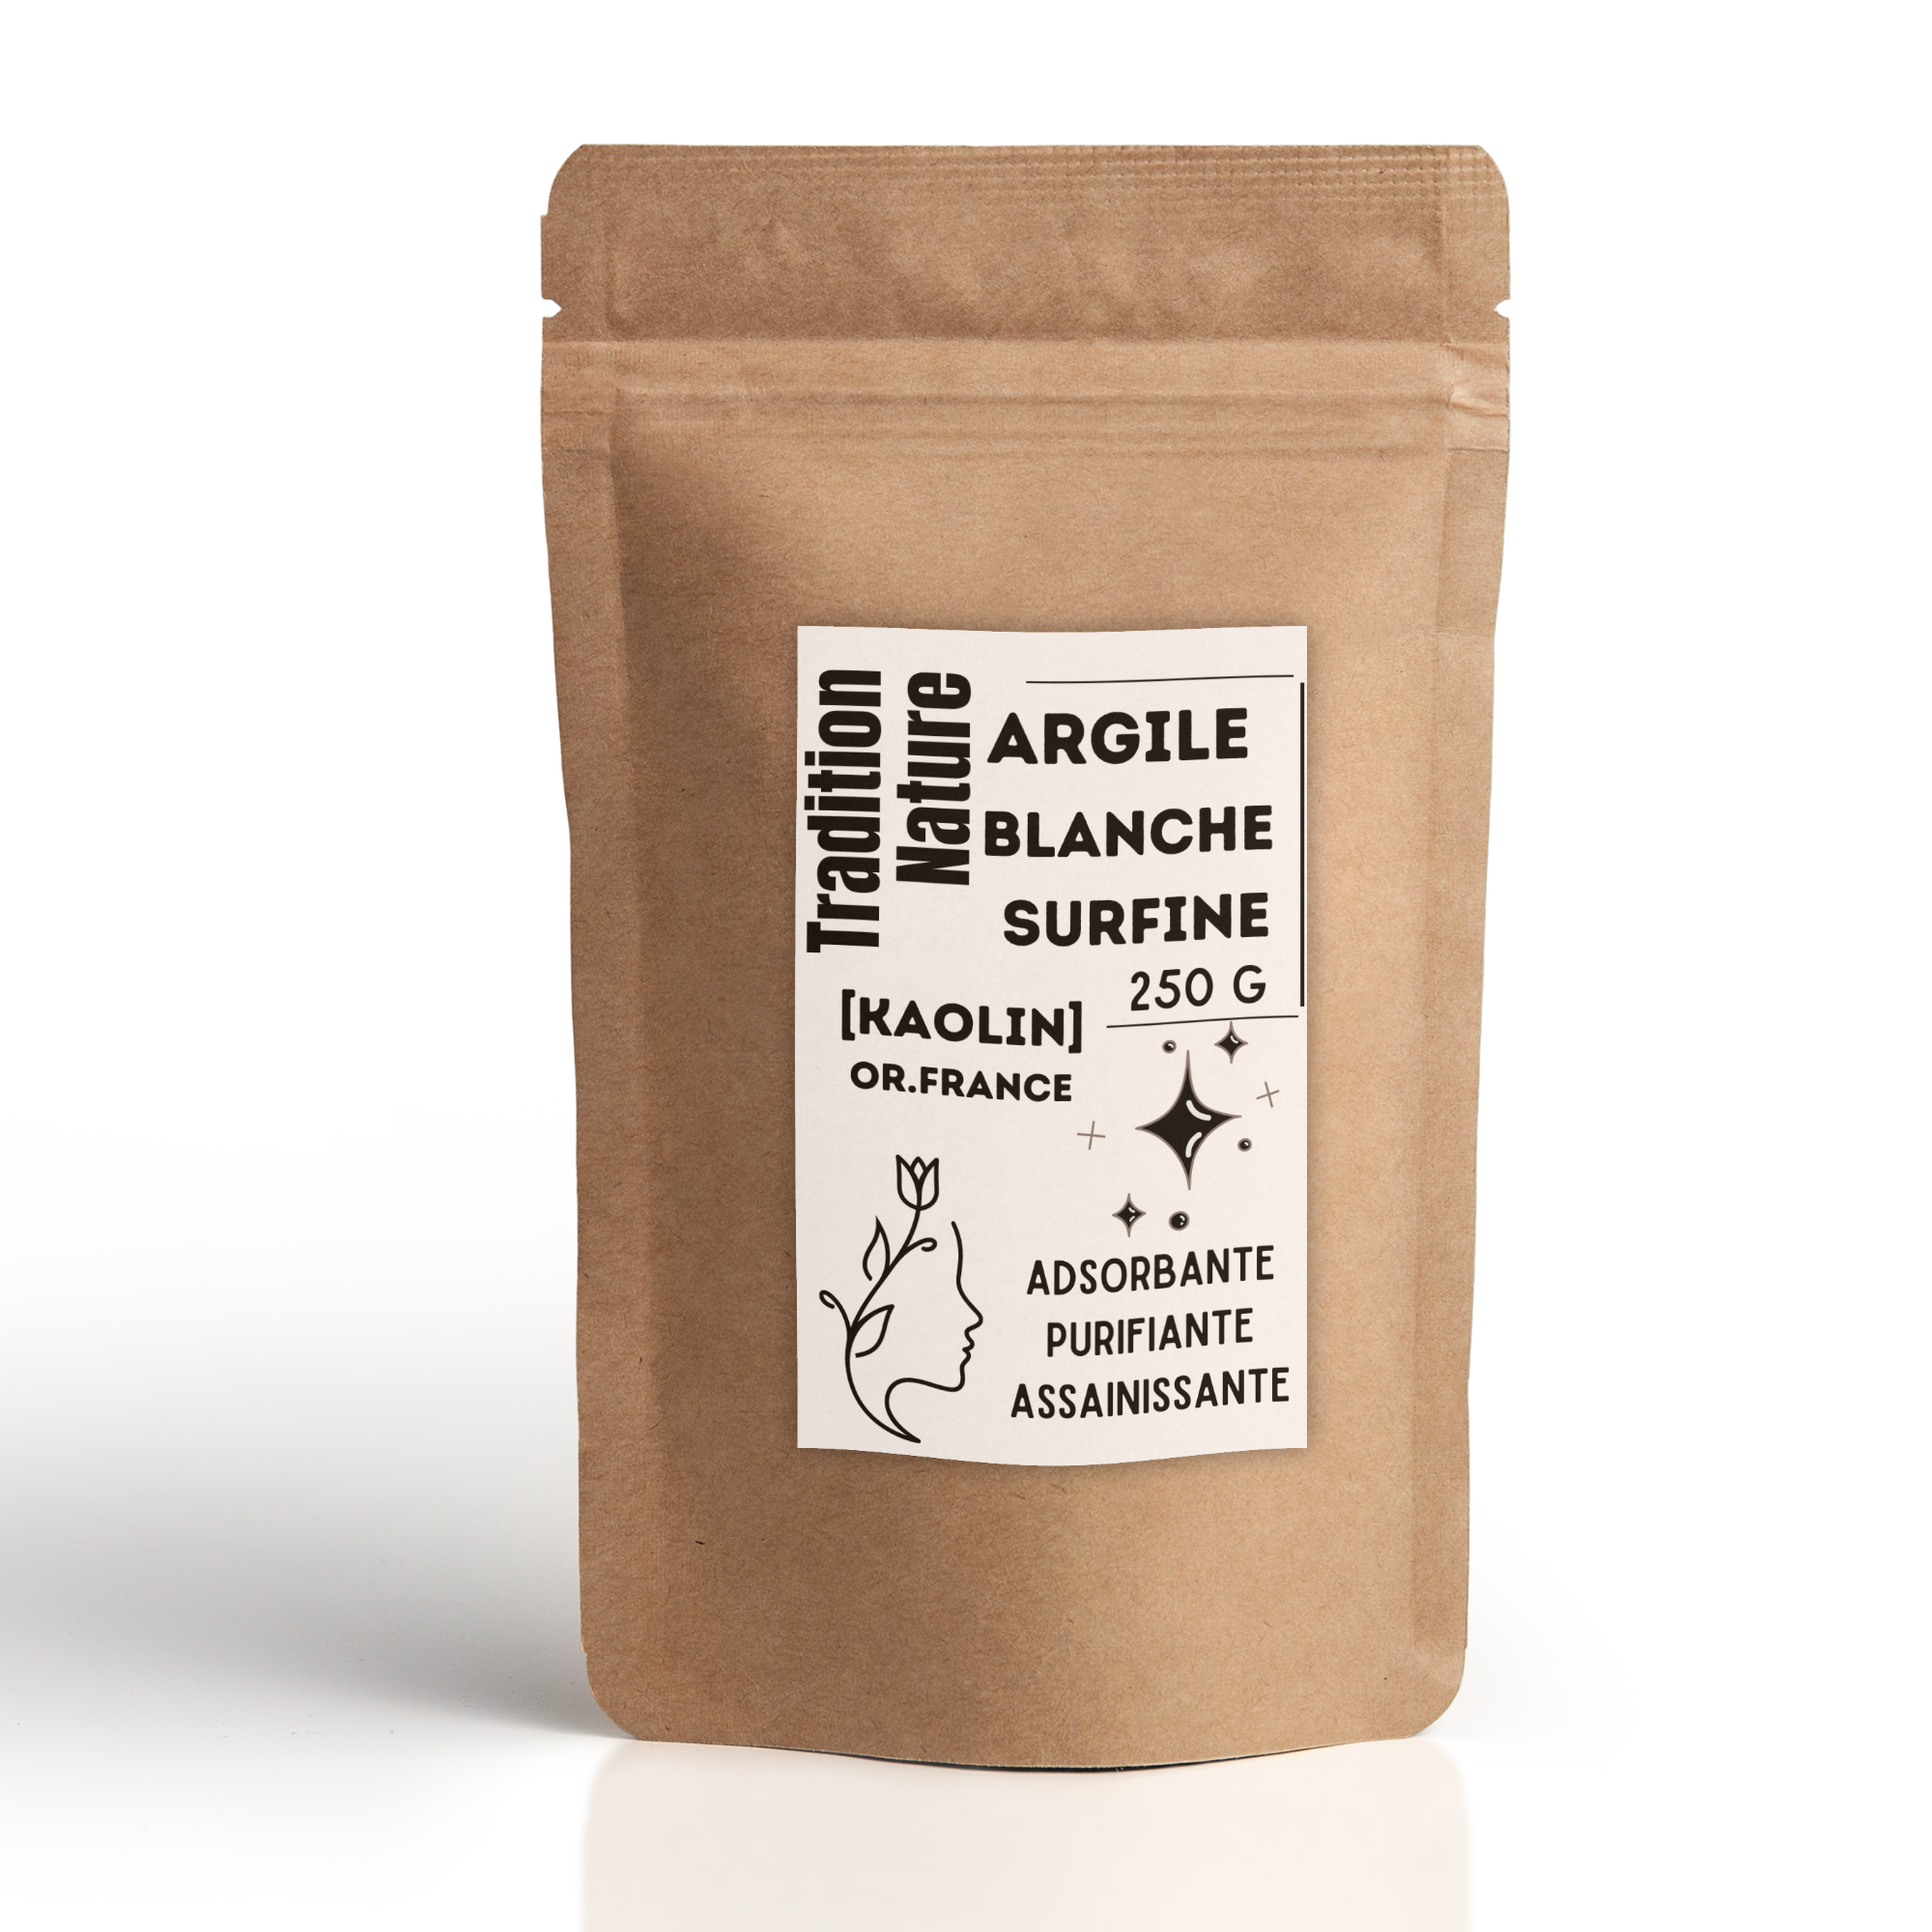 Argile blanche surfine 250 g [Kaolin] – Tradition Nature